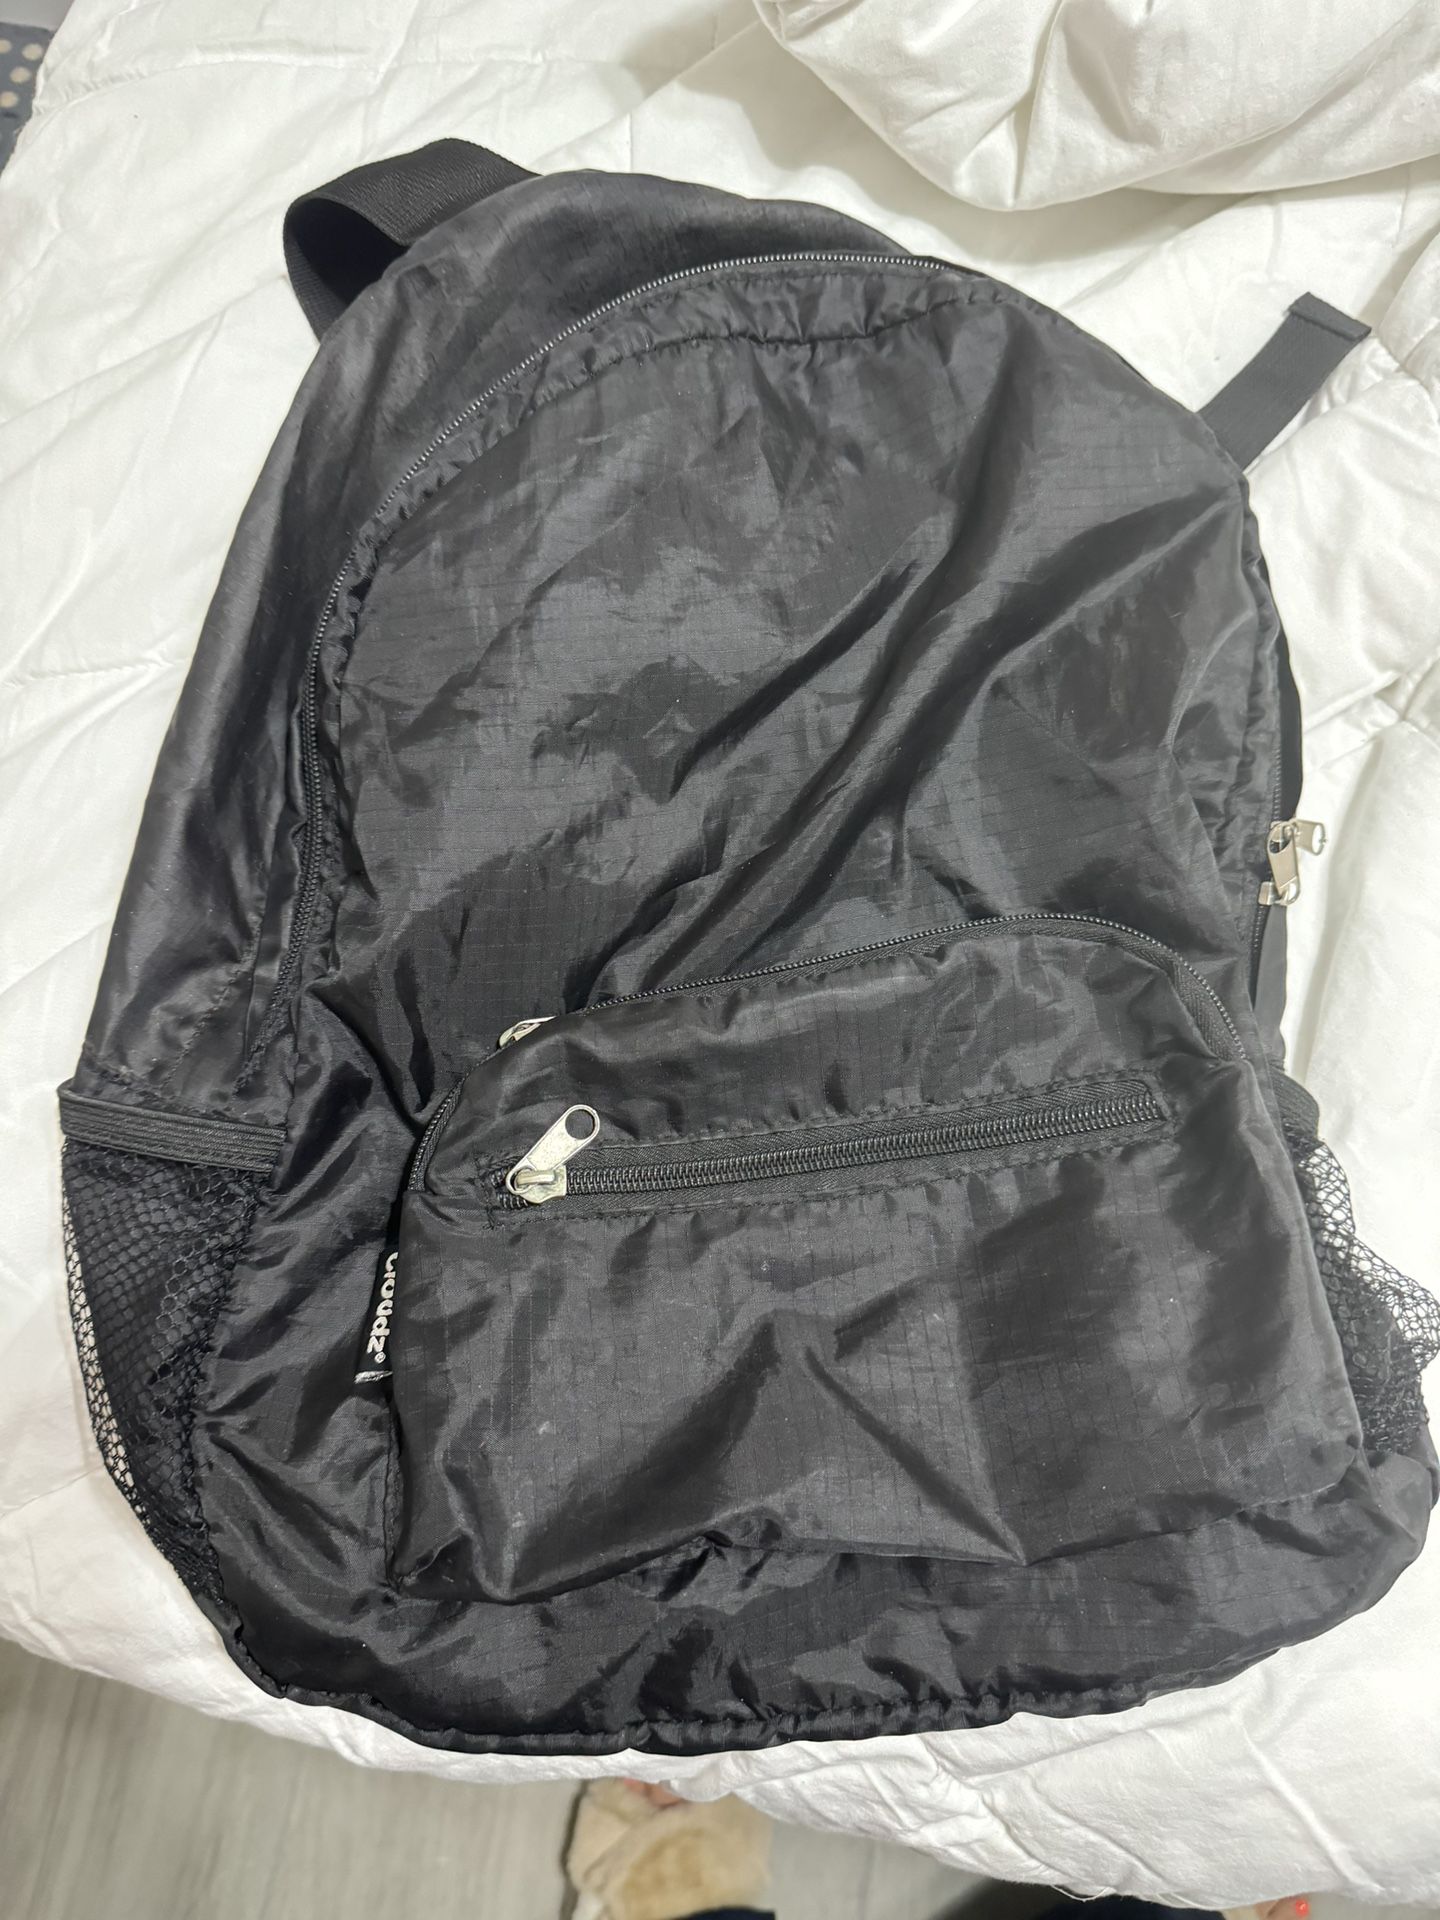 Zpack UltraLight Backpack 